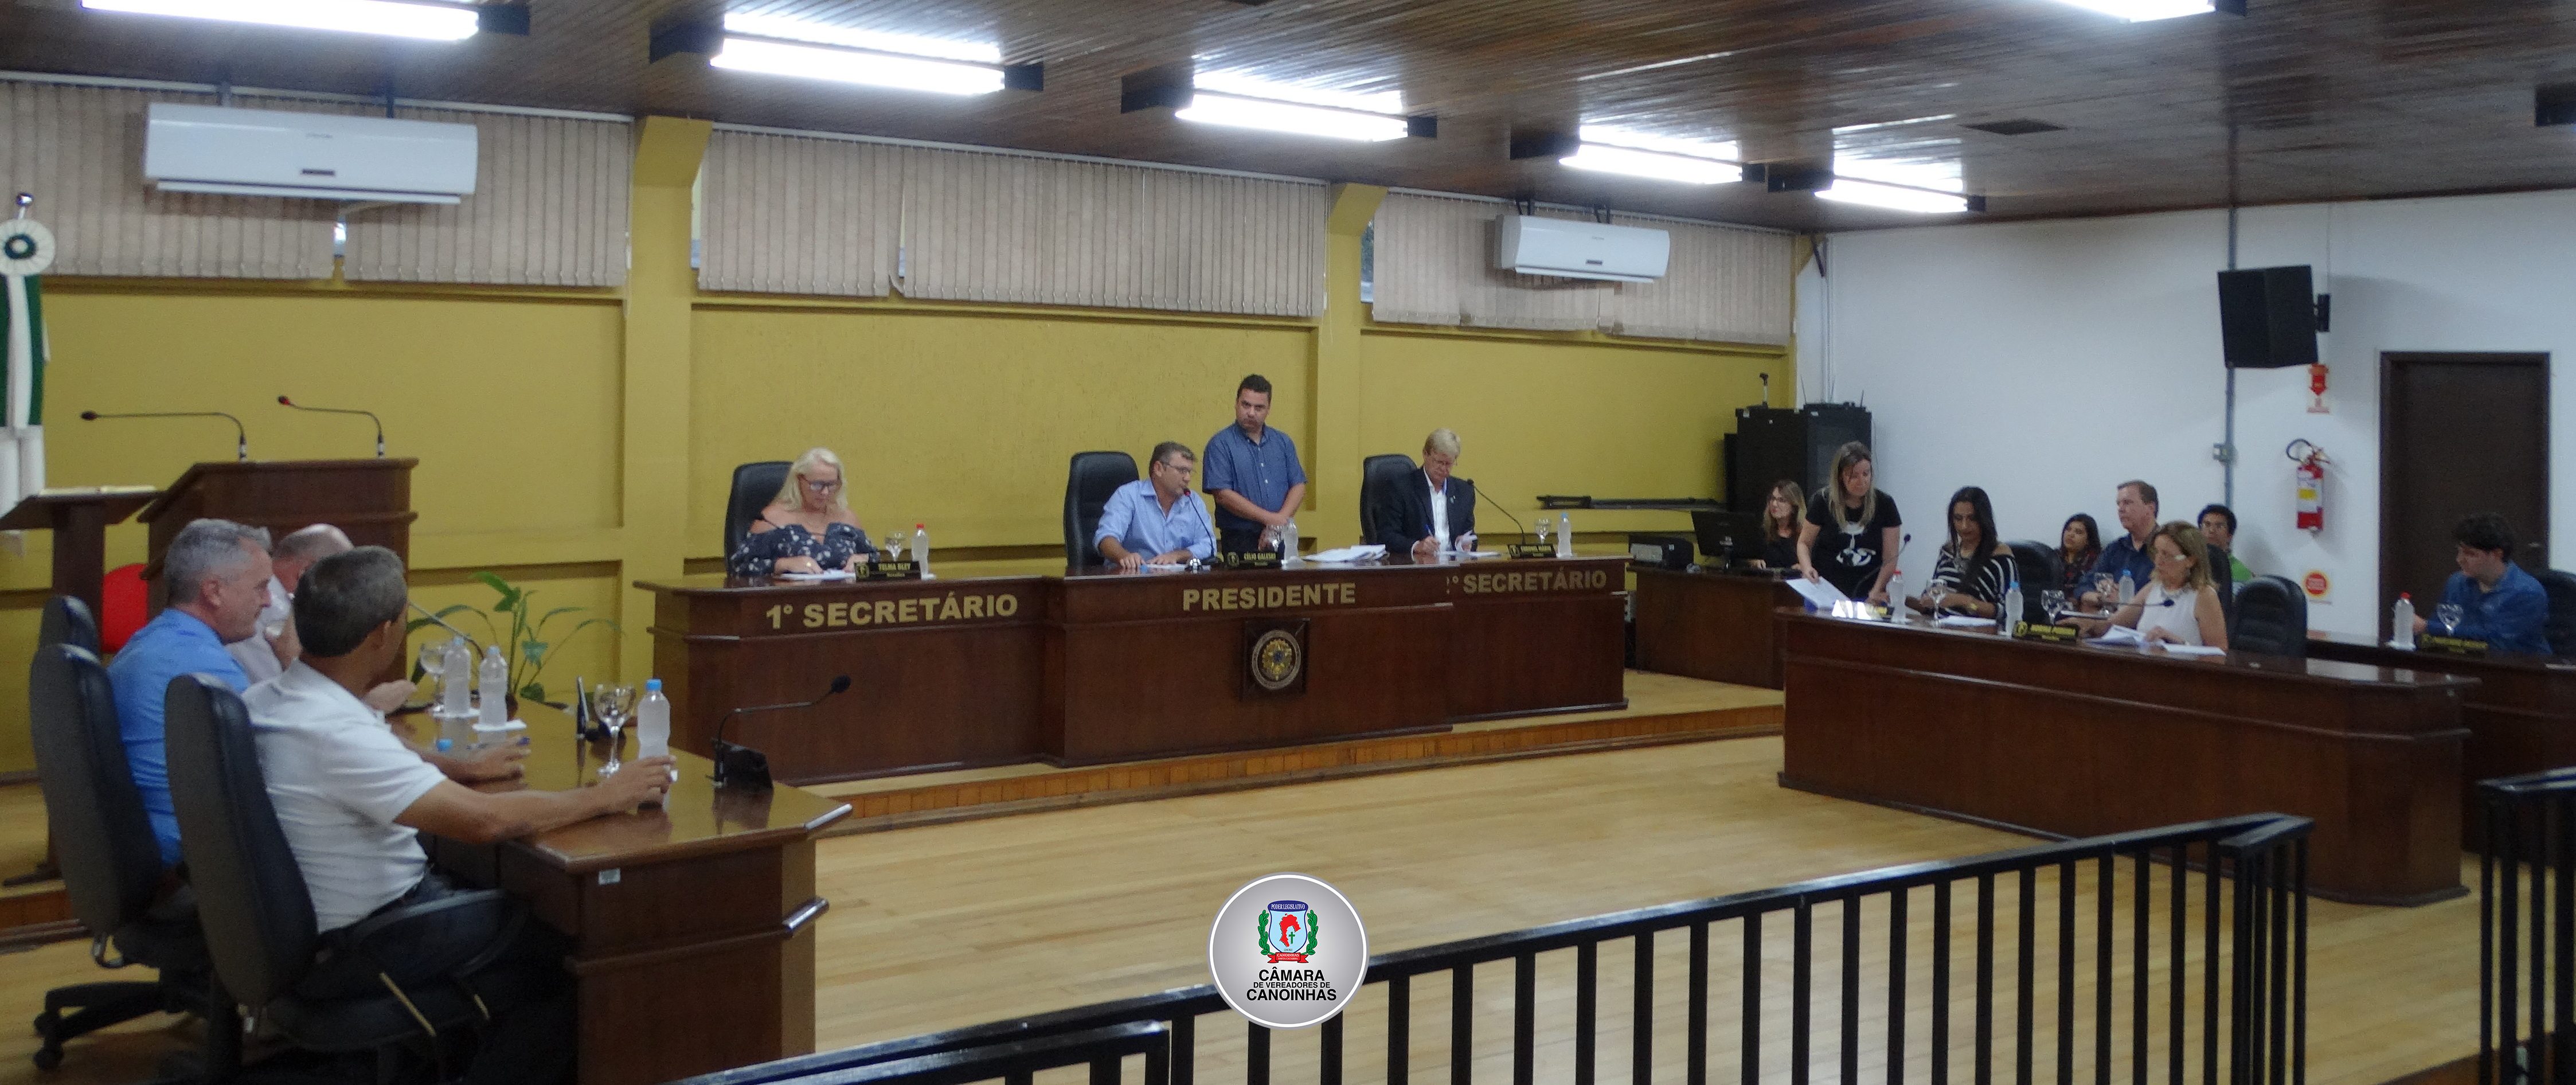 Câmara de Vereadores de Canoinhas autoriza reposição salarial para servidores públicos municipais